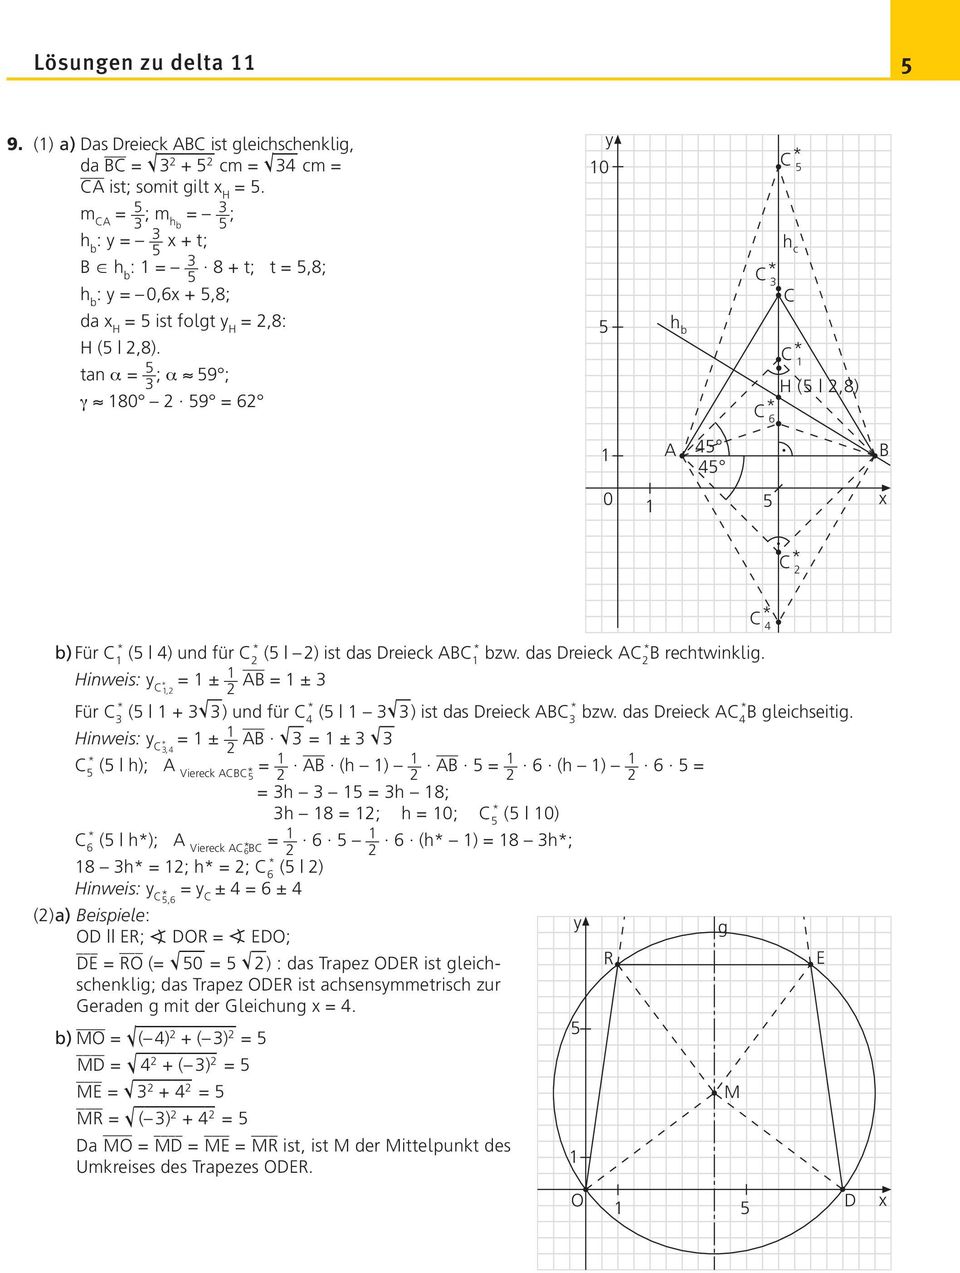 tan α = ; α 9 ; γ 80 9 = 6 0 h b C * h c C * C C * H (,8) C * 6 A 4 4 B 0 C * C * 4 b) Für C * ( 4) und für C * ( ) ist das Dreieck ABC * bzw. das Dreieck AC * B rechtwinklig.